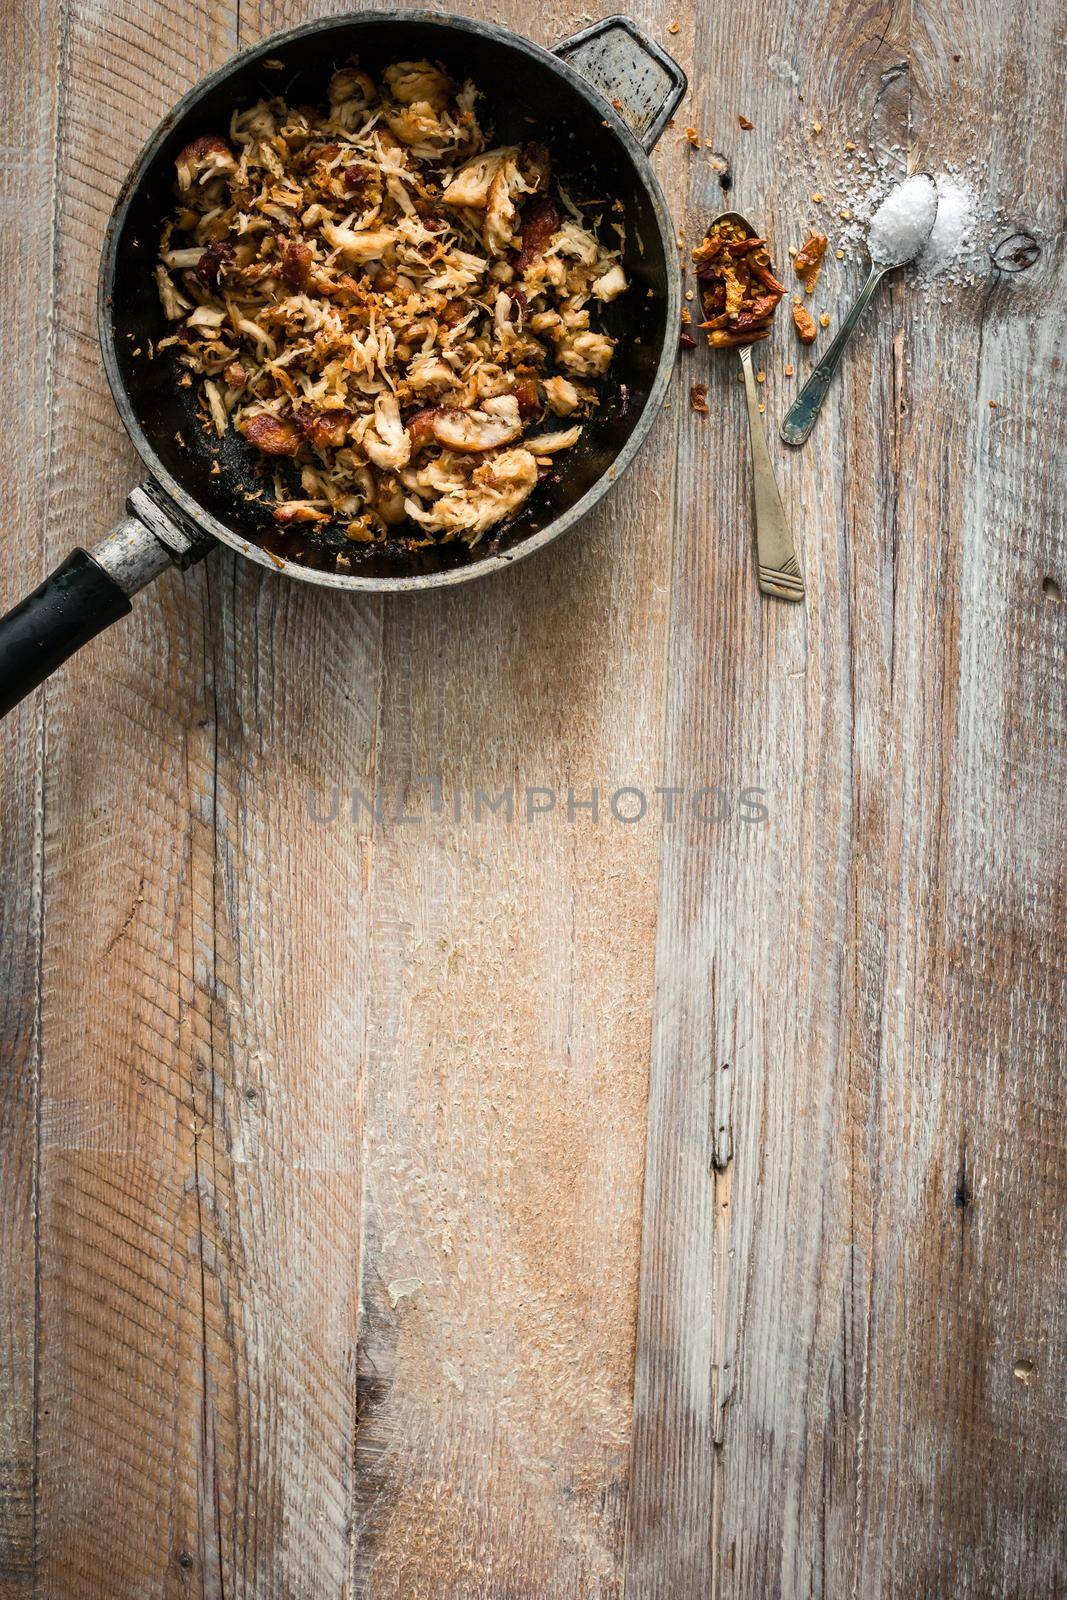 fried meat in pan on wooden table by GekaSkr